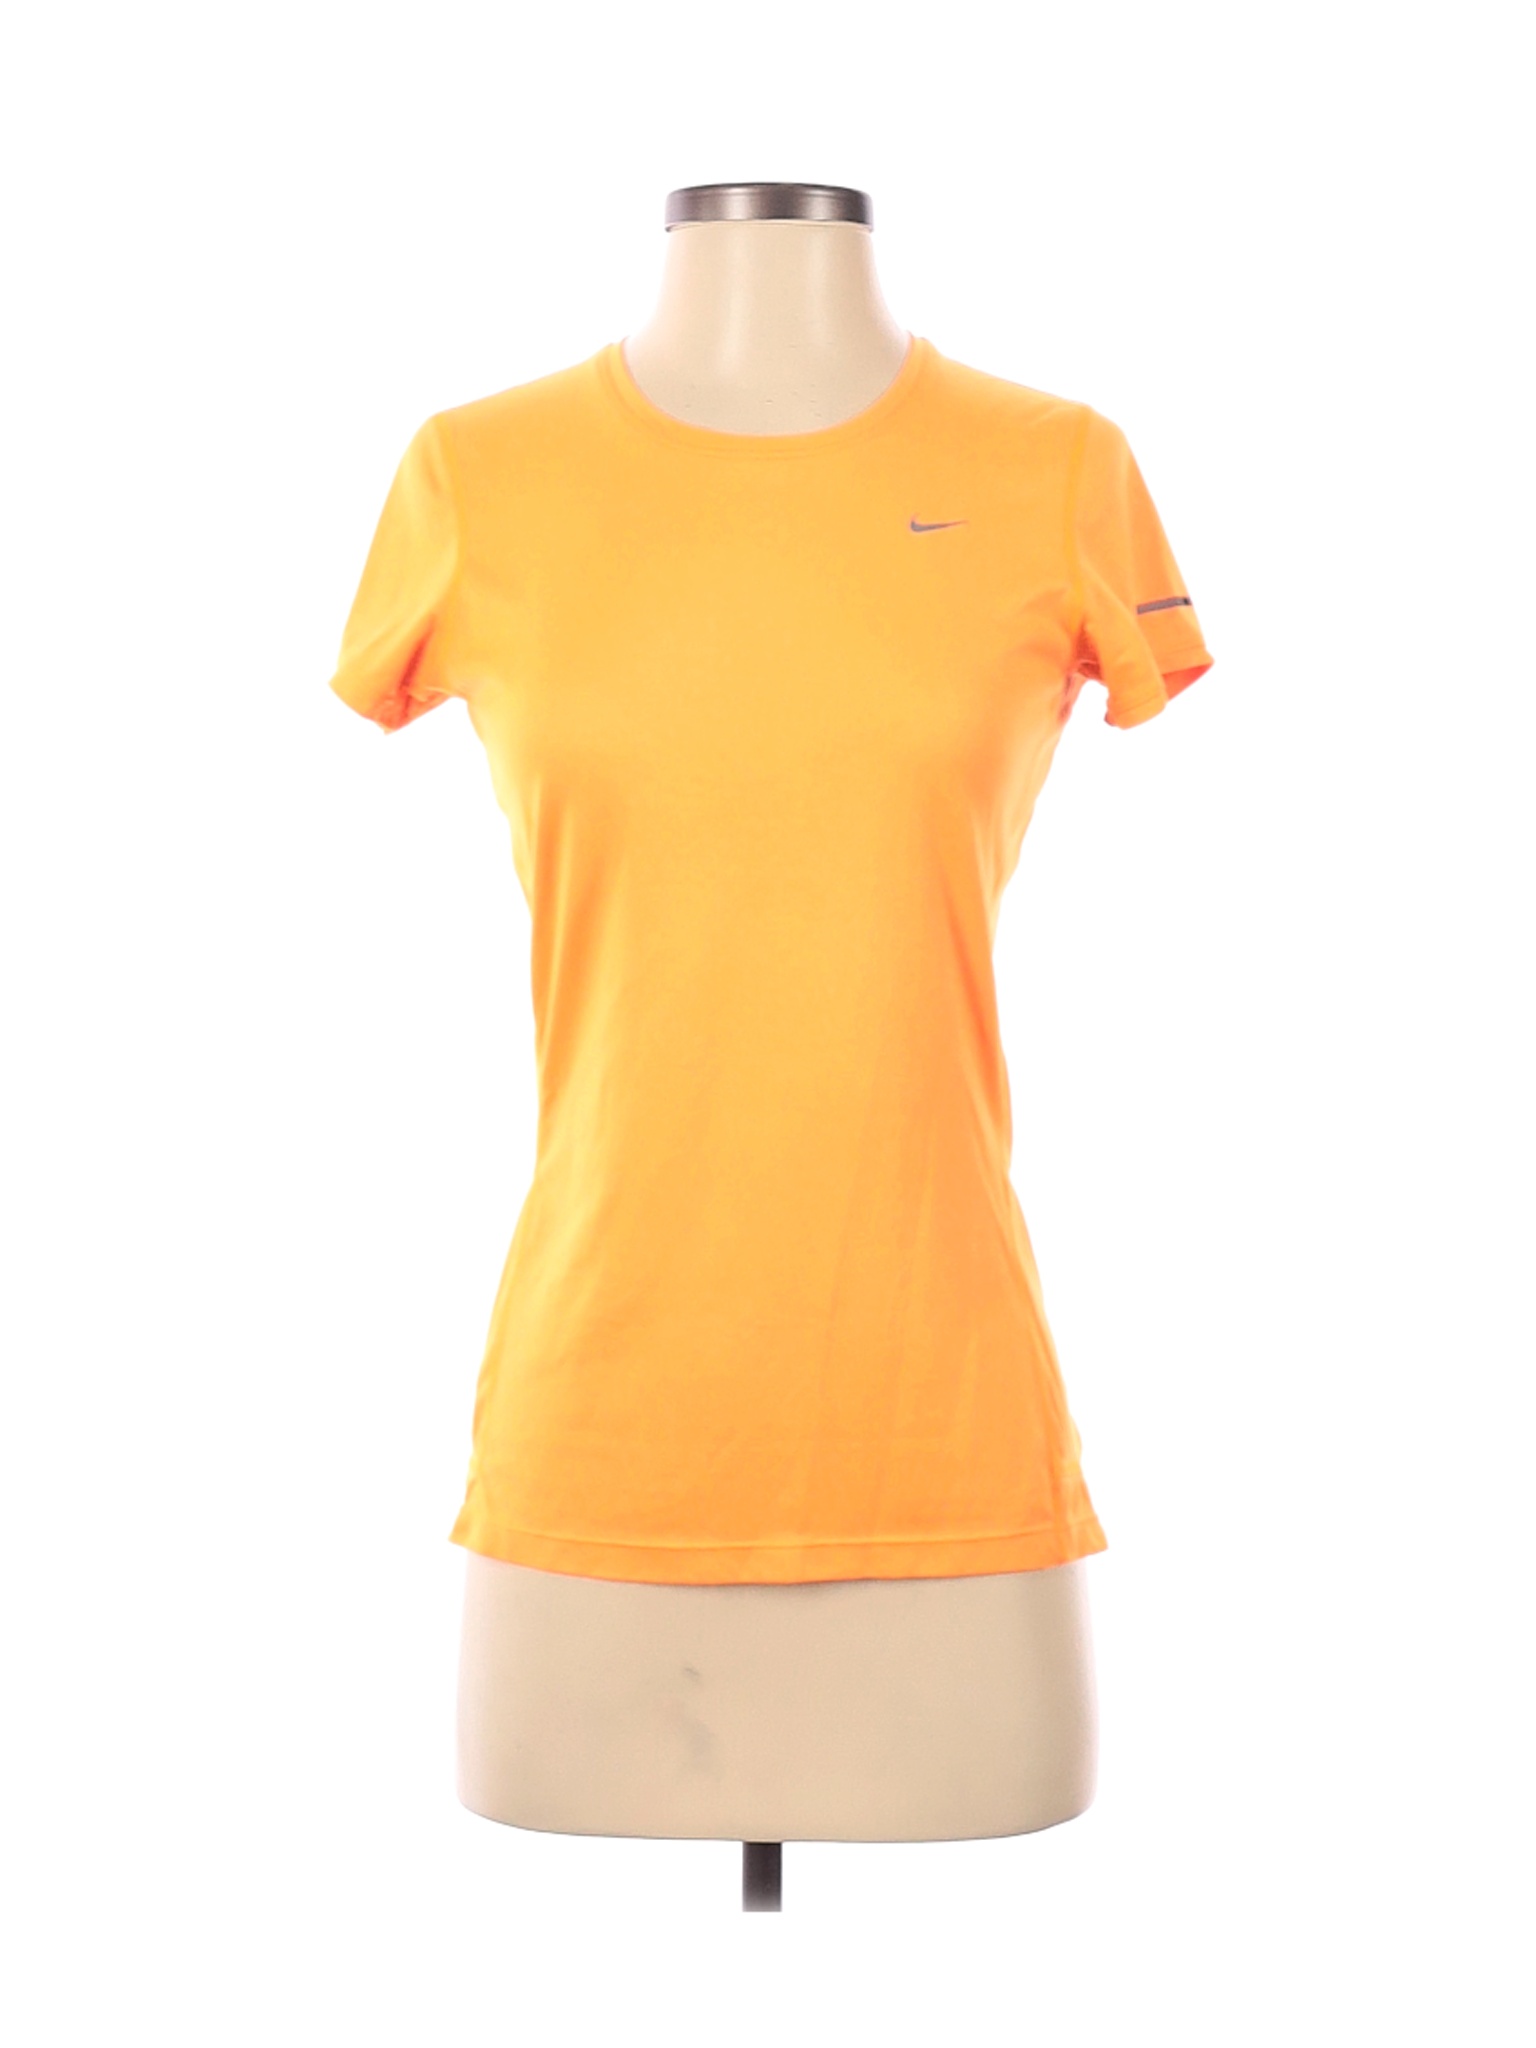 Nike Women Yellow Active T-Shirt S | eBay